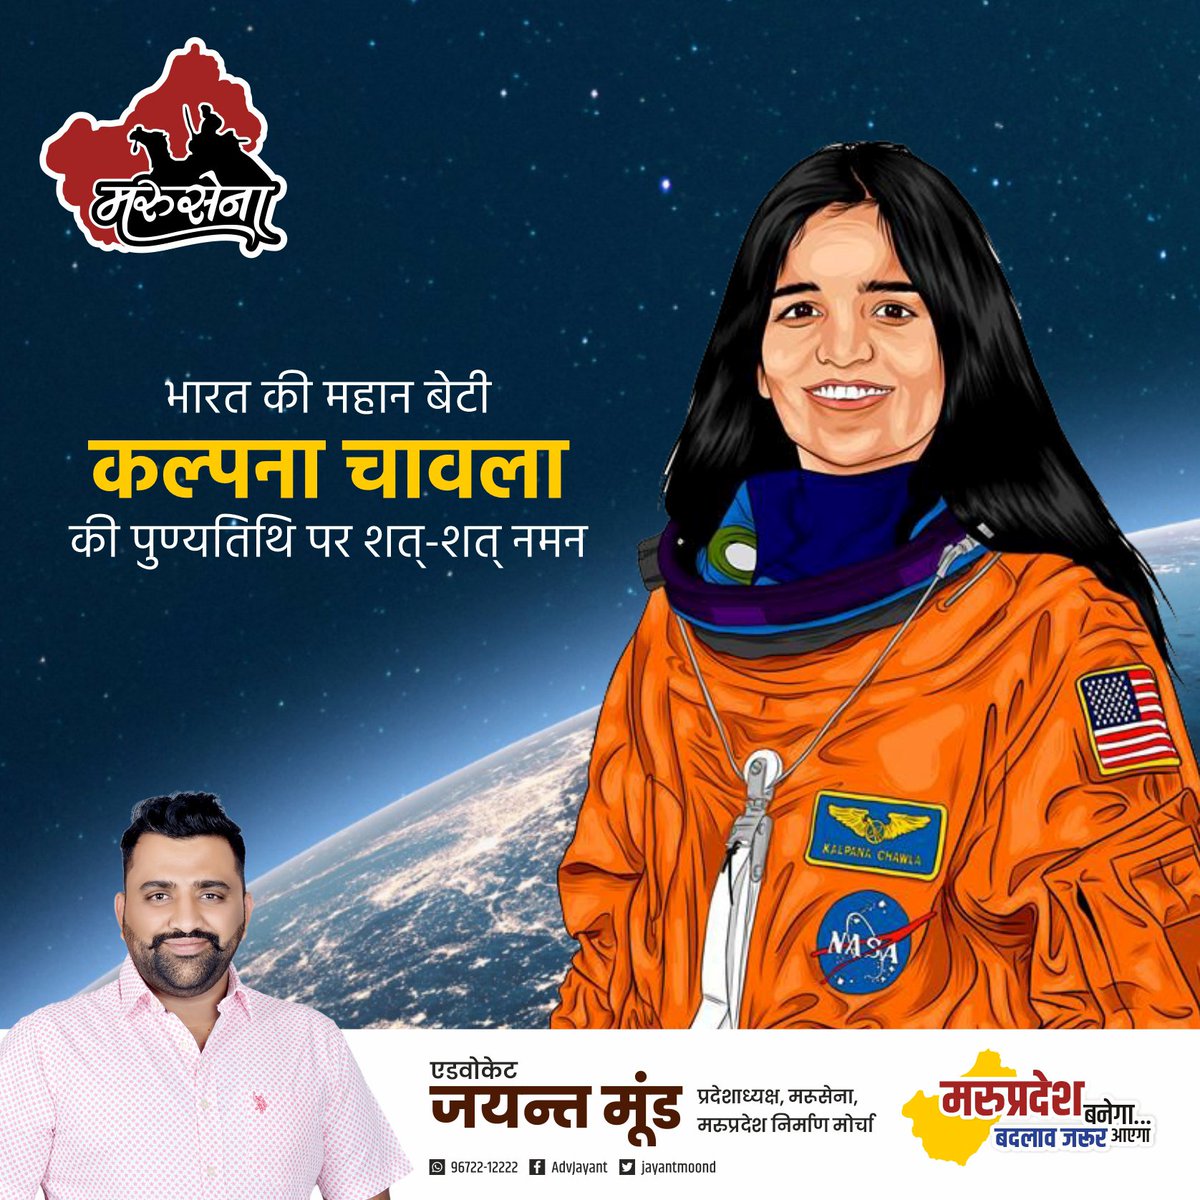 भारत की पहली महिला अंतरिक्ष यात्री कल्पना चावला की पुण्यतिथि पर विनम्र श्रद्धांजलि!
#KalpanaChawla #कल्पनाचावला
 #REETExamPaperLeak #परीक्षाओं_की_धांधली_की_जांच_करो #शौर्यचक्र_विजेता_विकास_जाखड़_को_न्याय_दो